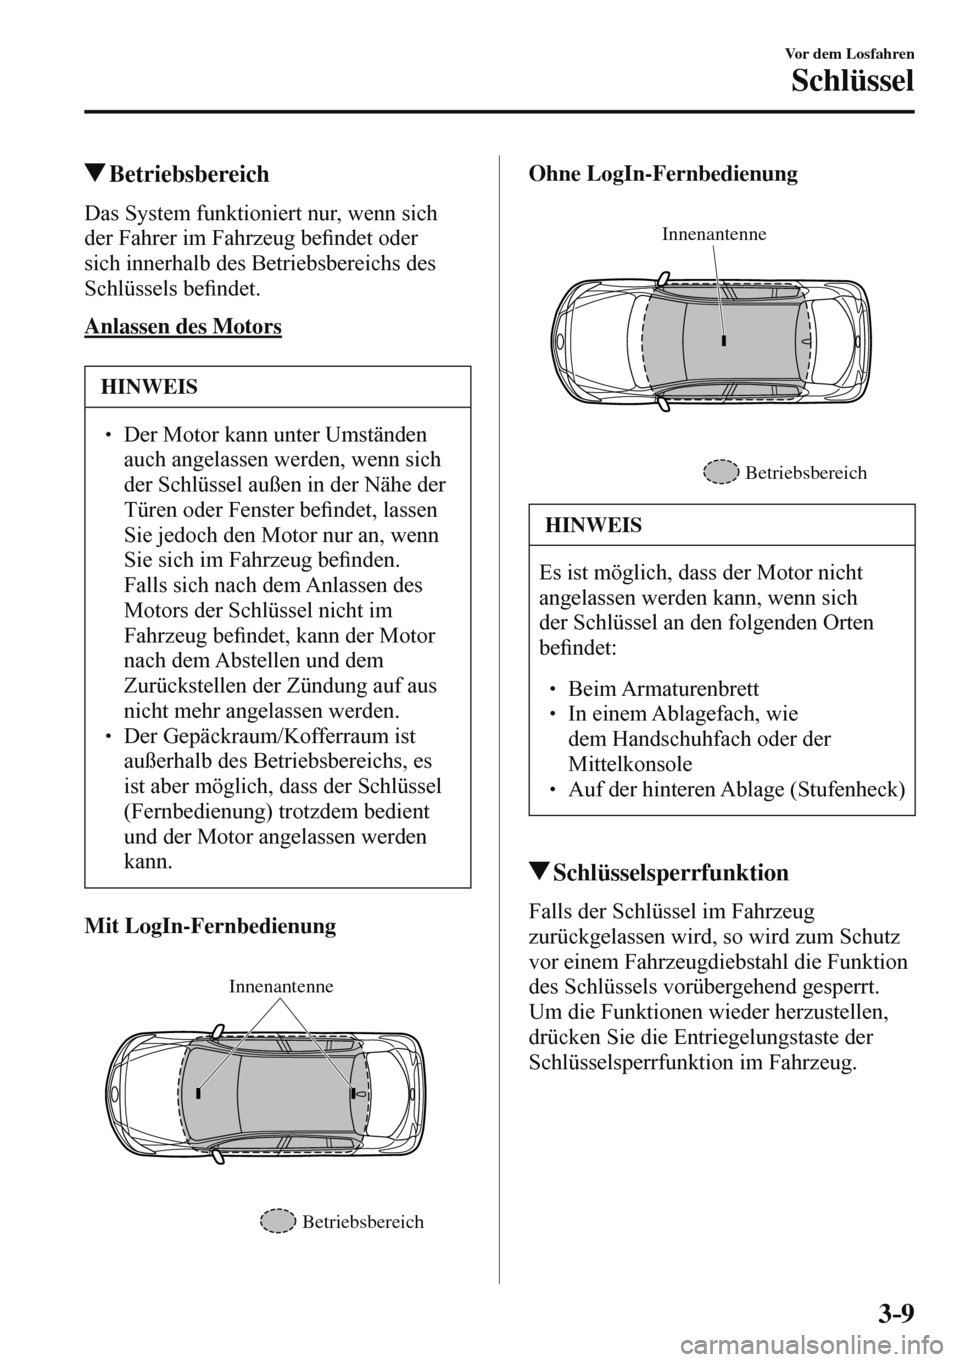 MAZDA MODEL 3 HATCHBACK 2016  Betriebsanleitung (in German) 3–9
Vor dem Losfahren
Schlüssel
 Betriebsbereich
    Das System funktioniert nur, wenn sich 
der Fahrer im Fahrzeug be�¿ ndet oder 
sich innerhalb des Betriebsbereichs des 
Schlüssels be�¿ ndet.